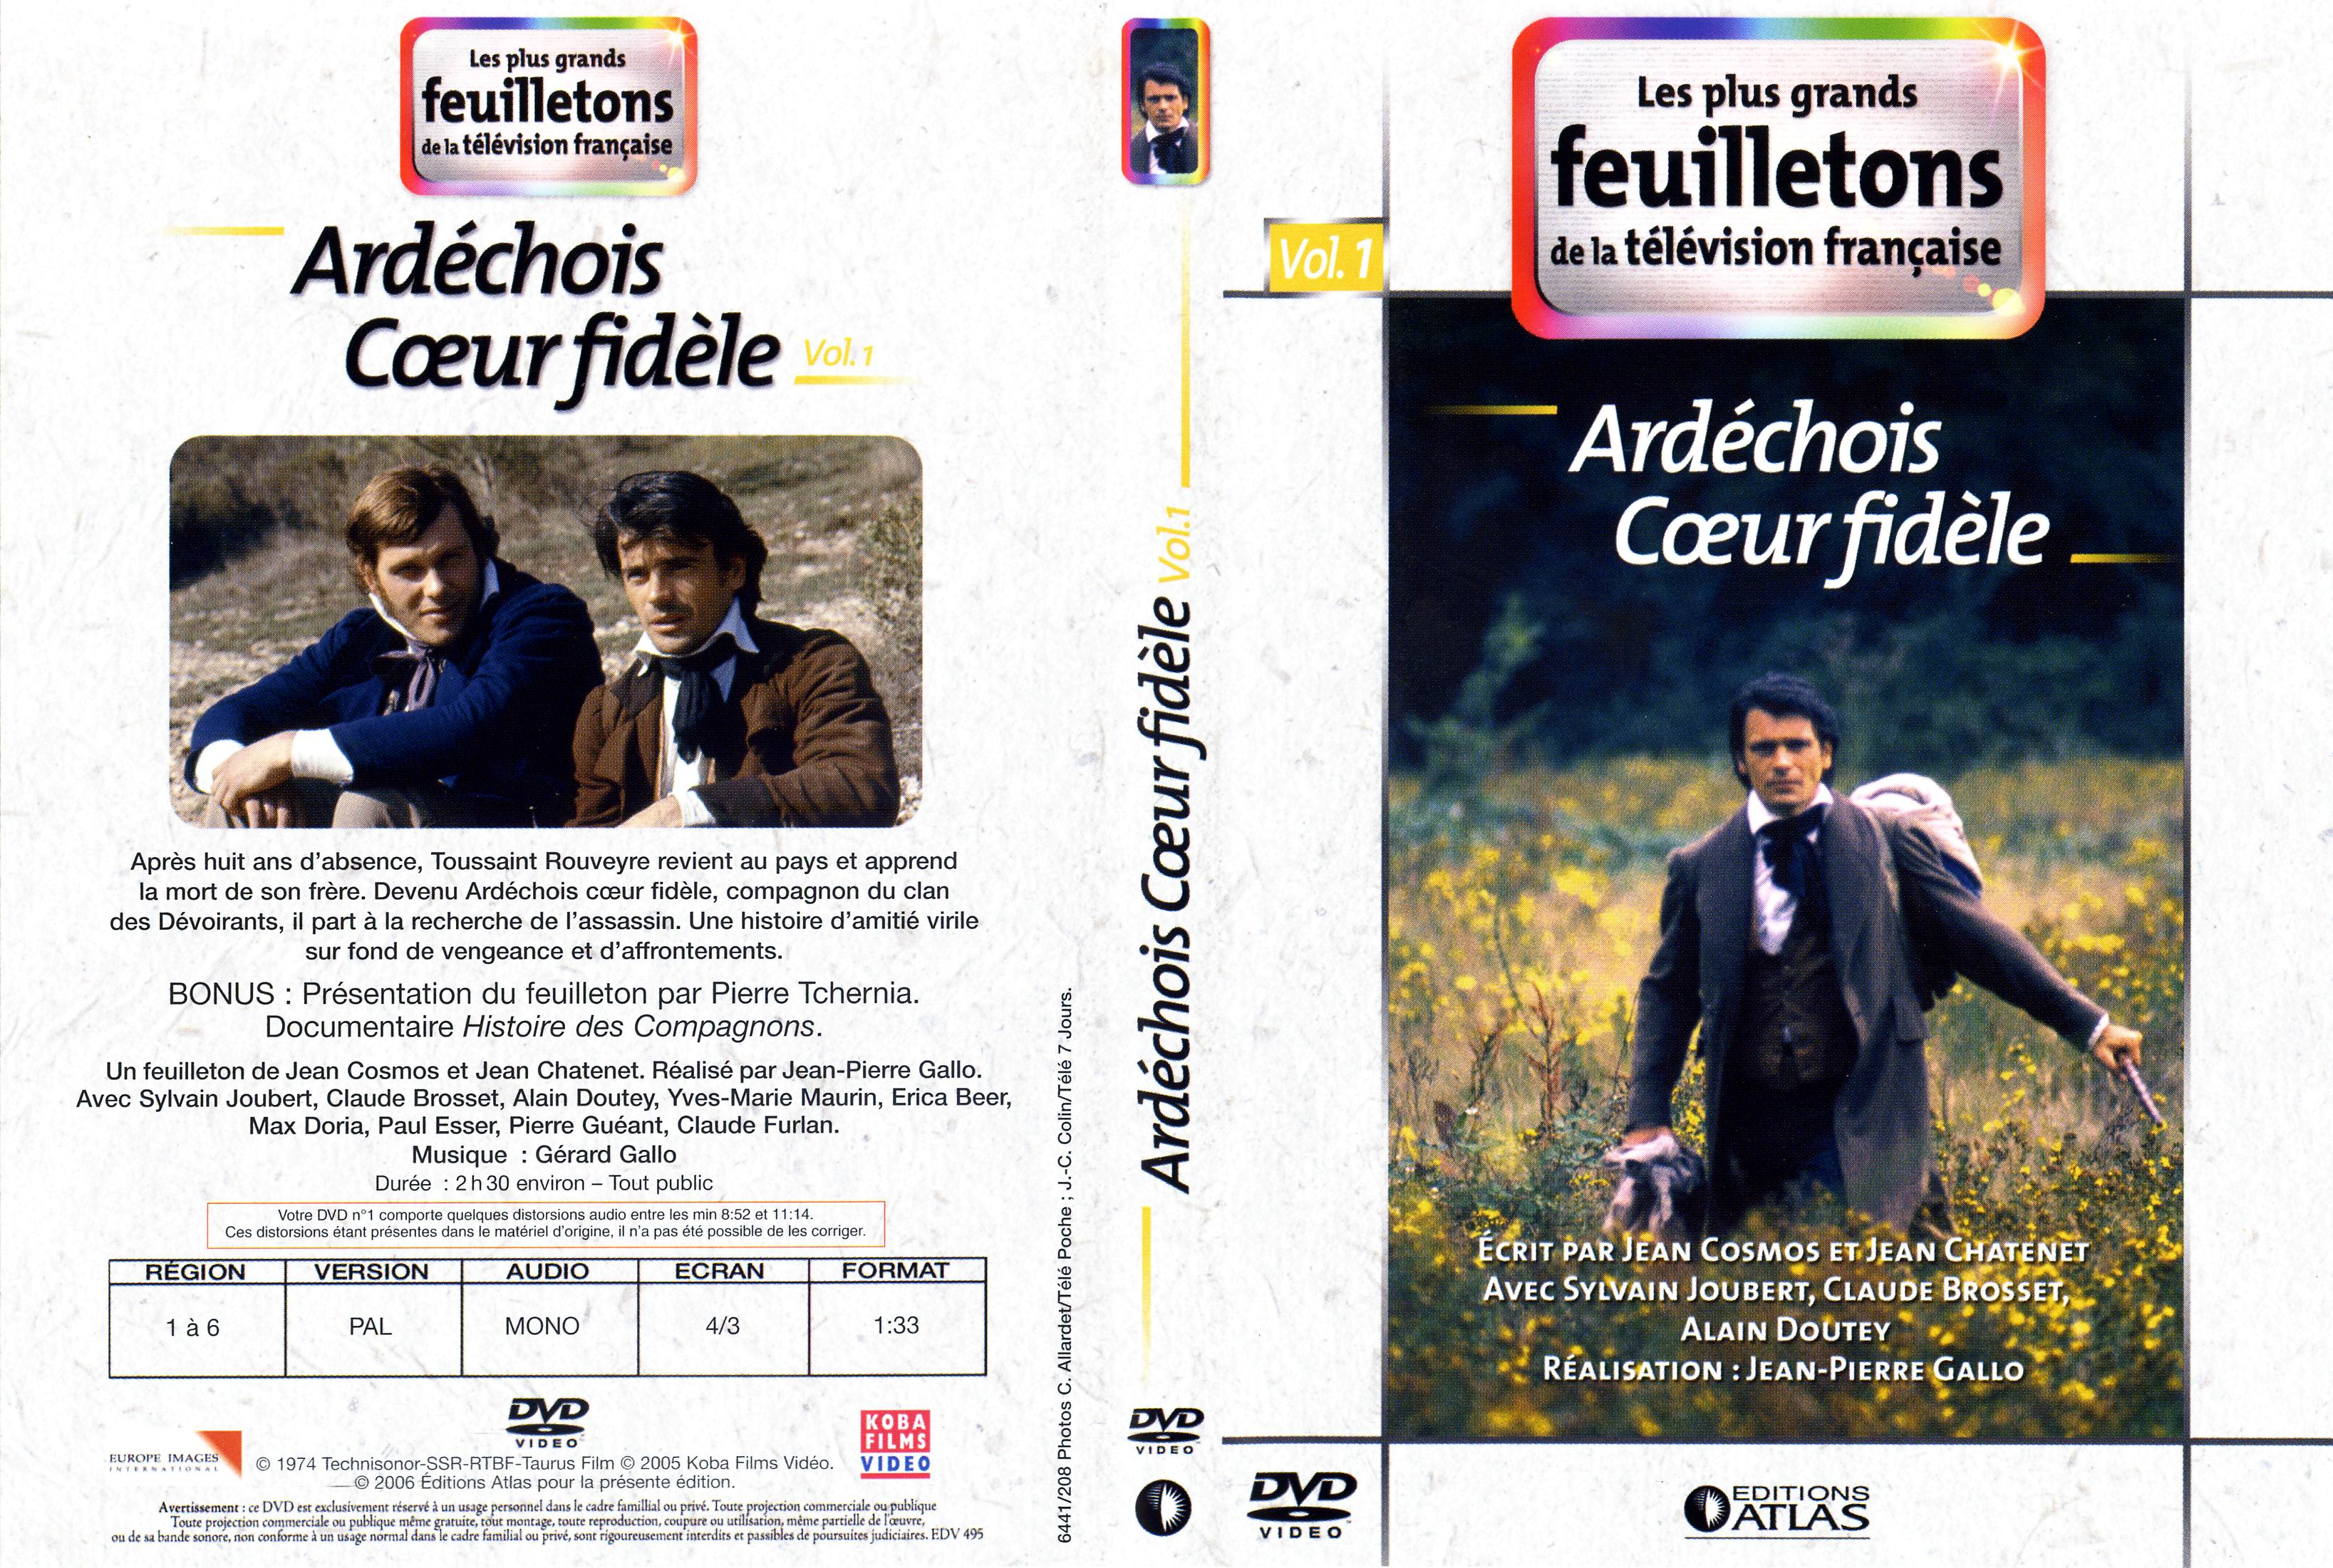 Jaquette DVD Ardchois coeur fidle vol 1